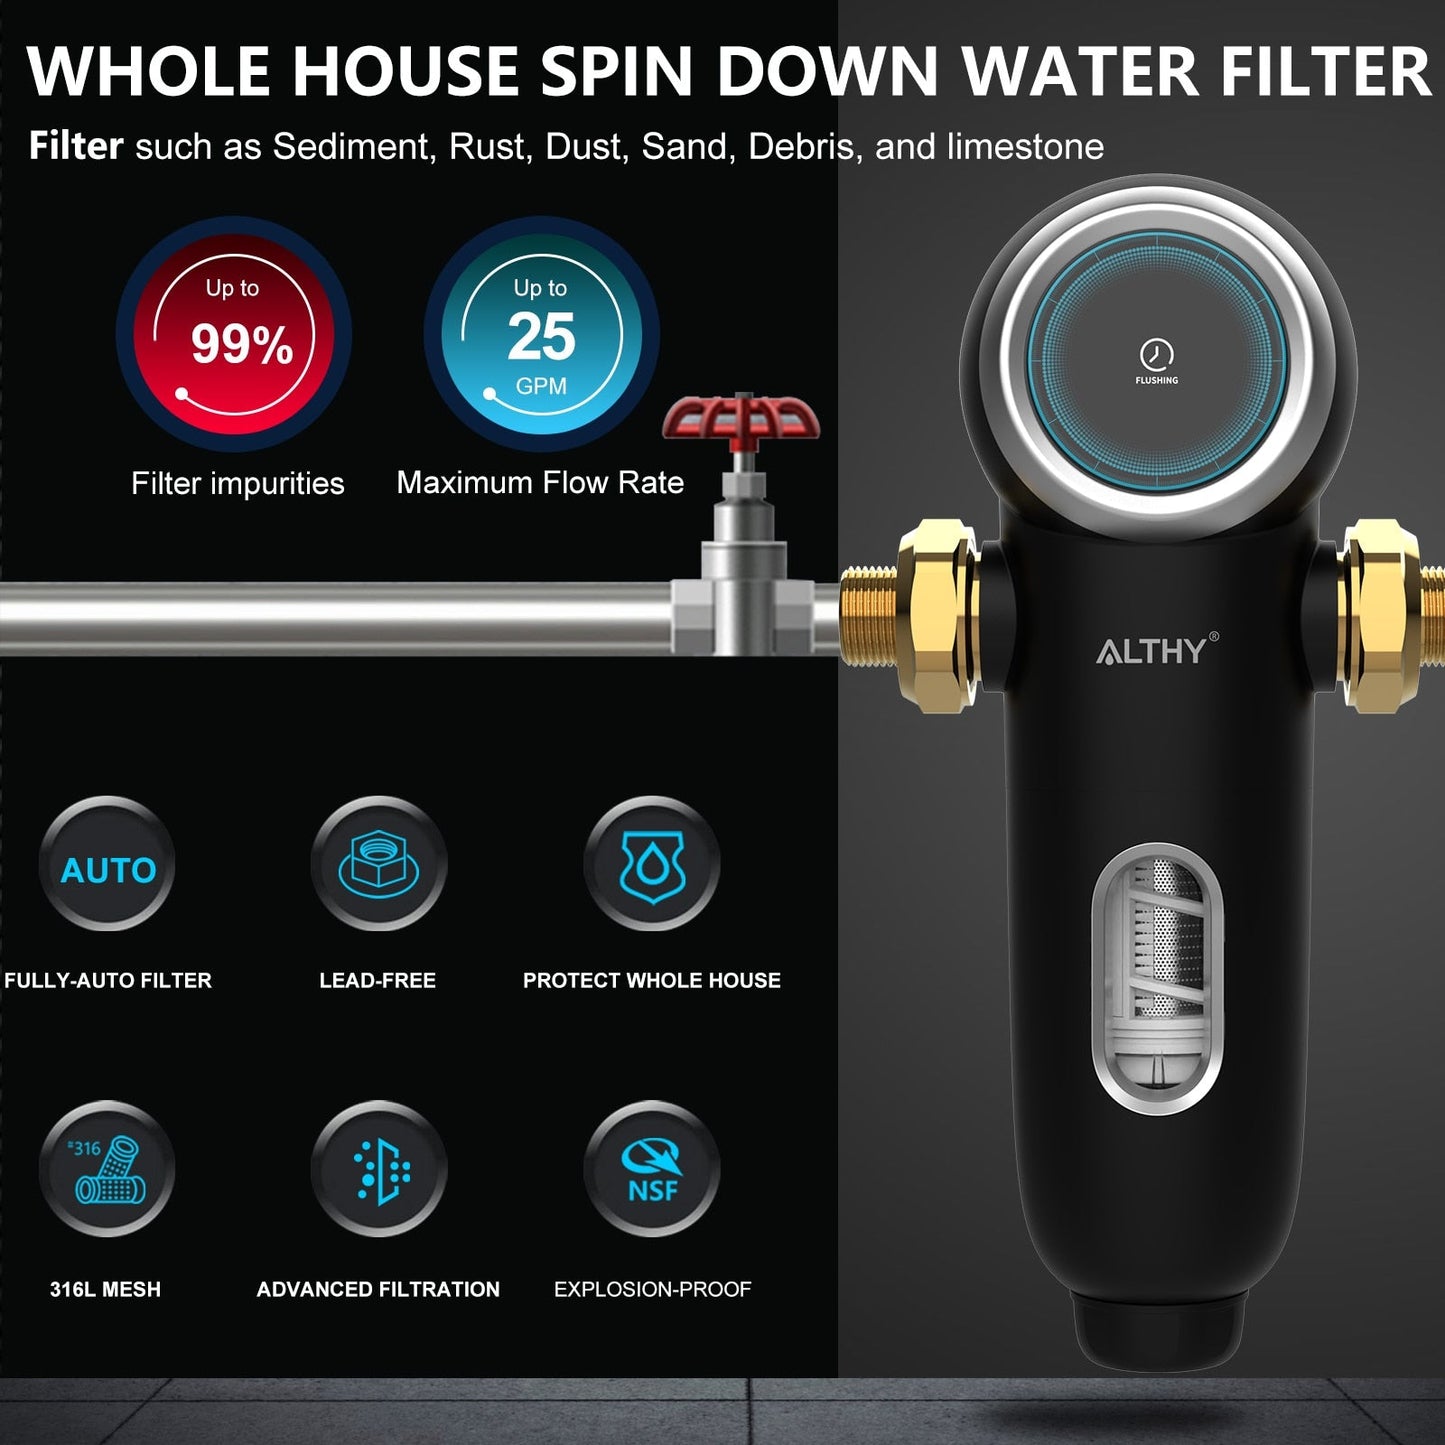 ALTHY PRE-AUTO1 Prefiltro de retrolavado automático Filtro de agua de sedimentos giratorio Sistema purificador central para toda la casa